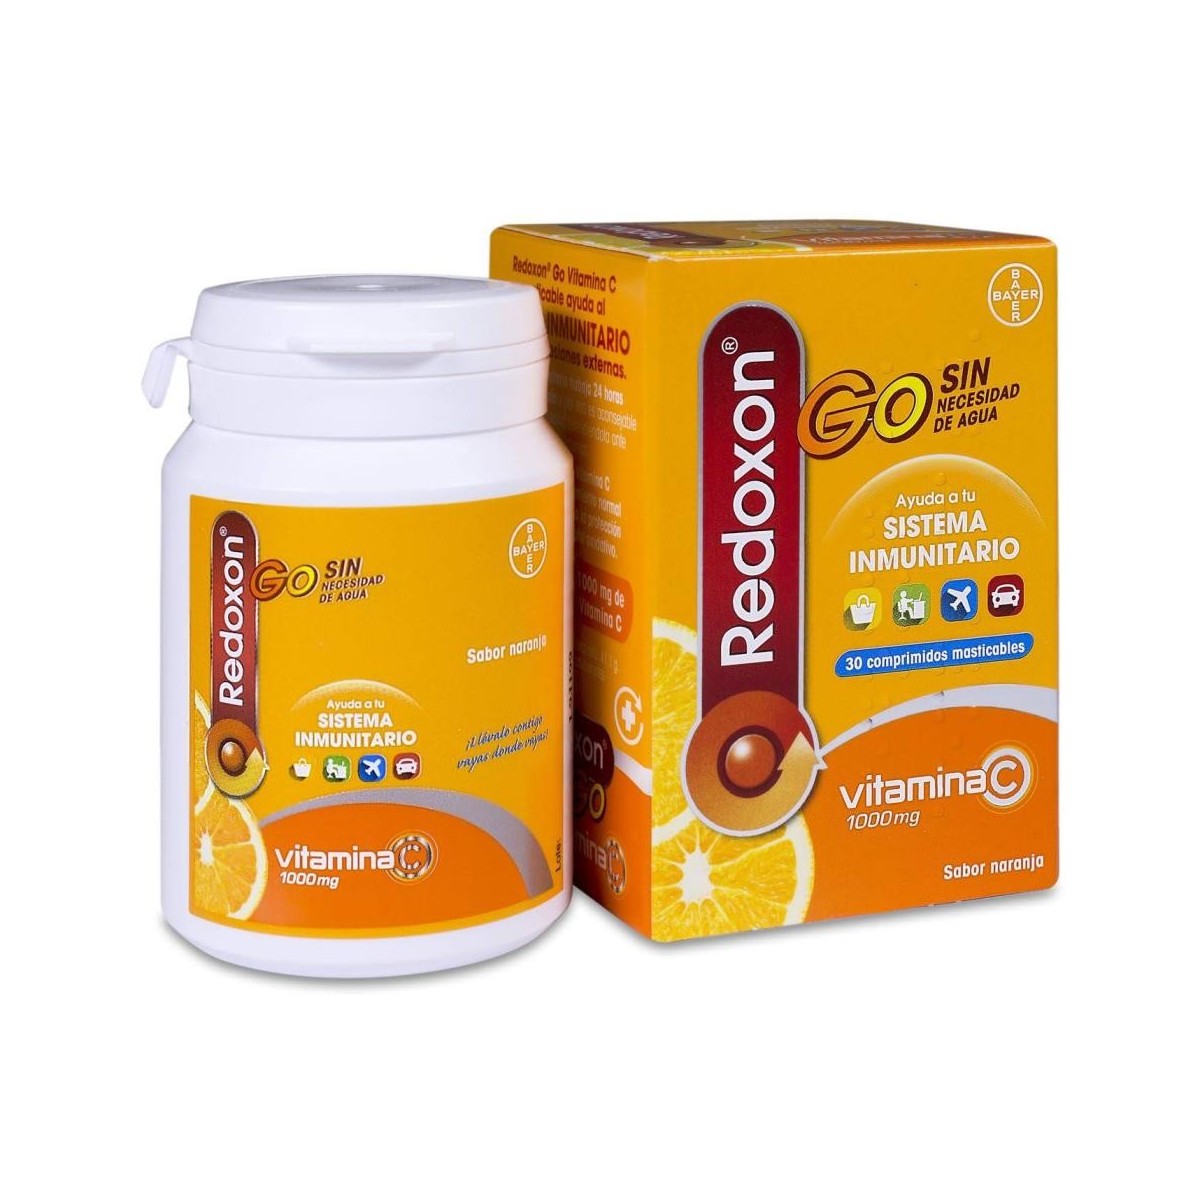 redoxon-30-comprimidos-masticables-go